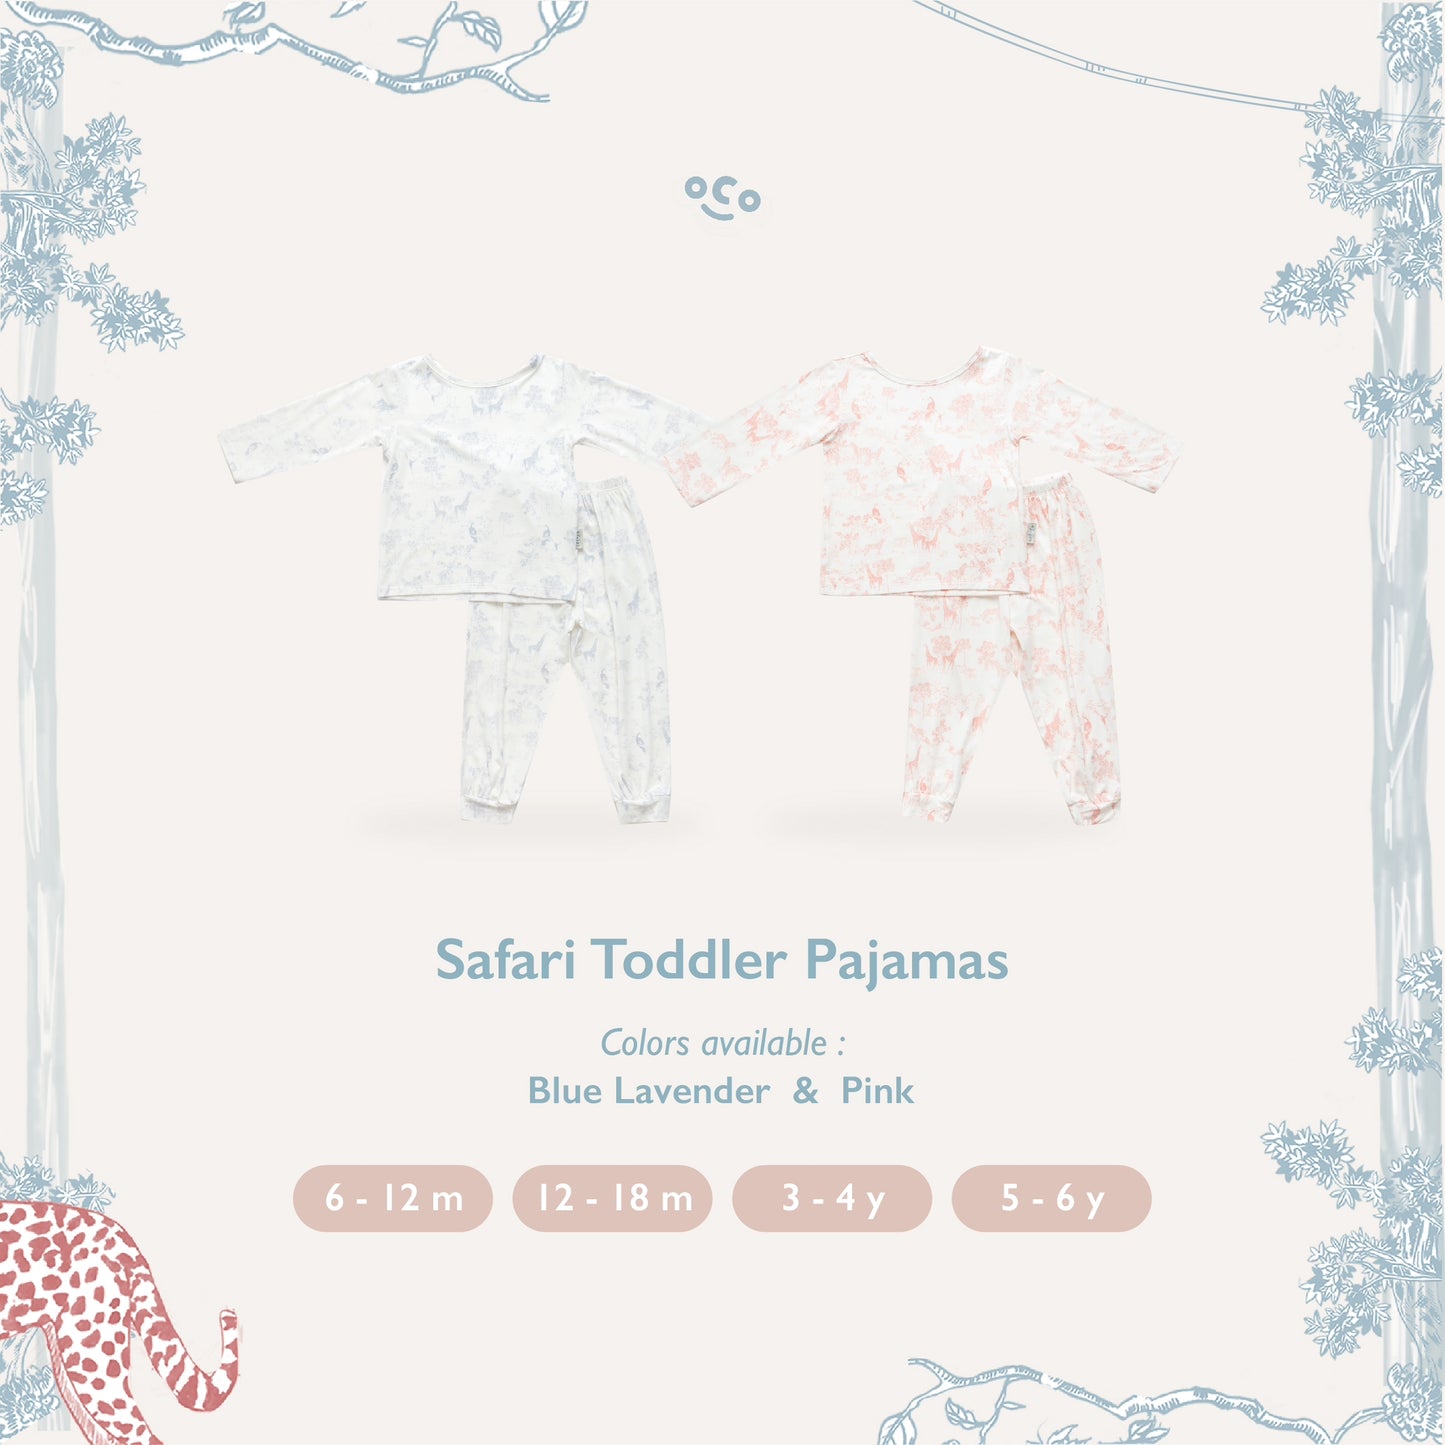 Safari Toddler Pajamas